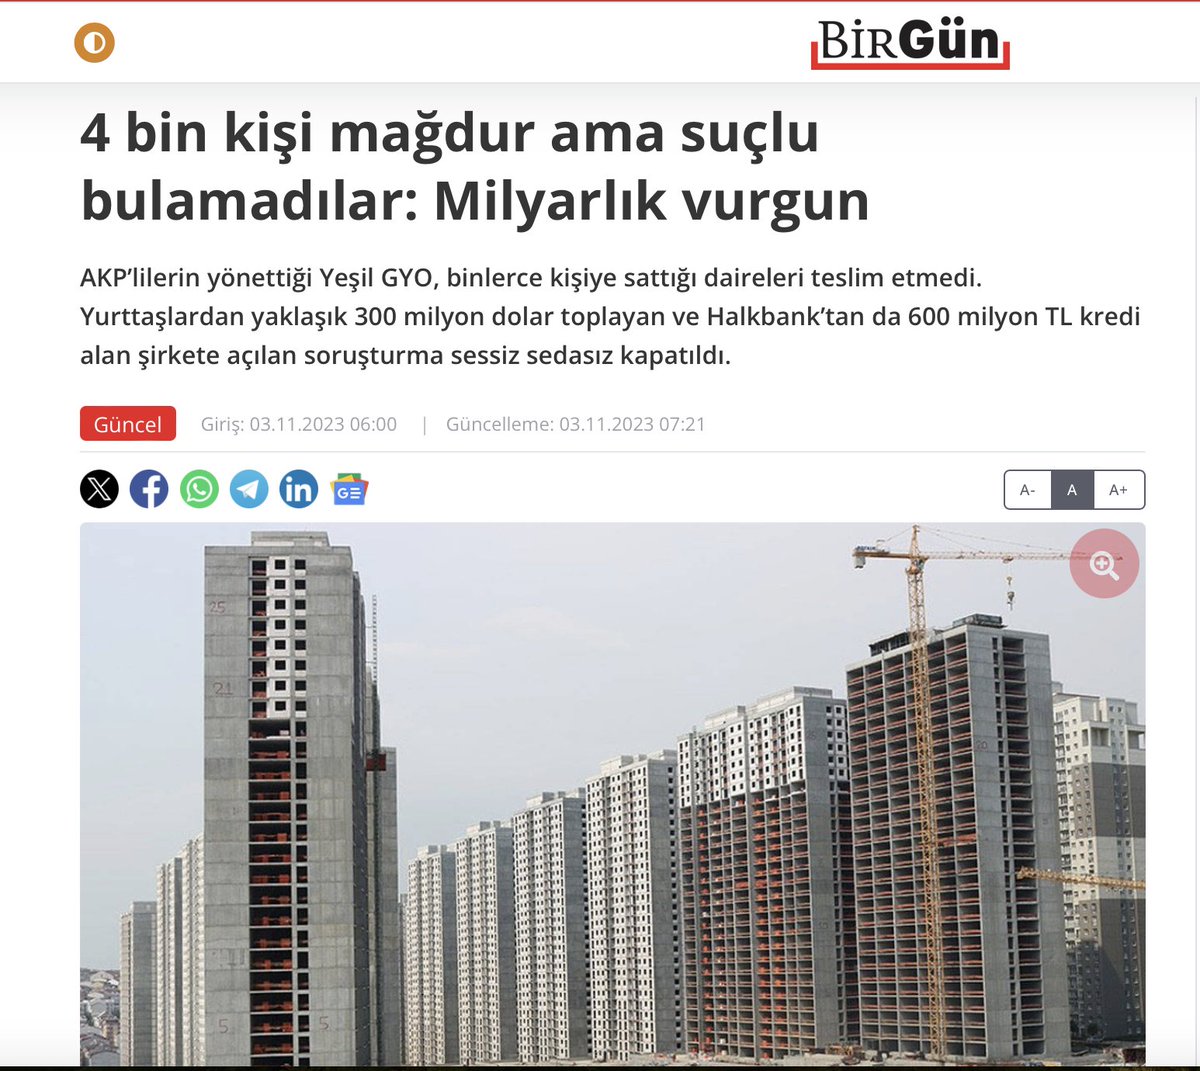 4 bin kişi mağdur ama suçlu bulamadılar: MİLYARLIK VURGUN !!!!B 
#AKP’lilerin yönettiği #YeşilGYO, binlerce kişiye sattığı daireleri teslim etmedi. Yurttaşlardan yaklaşık 300 milyon dolar toplayan ve Halkbank’tan da 600 milyon TL kredi alan şirkete açılan soruşturma sessiz